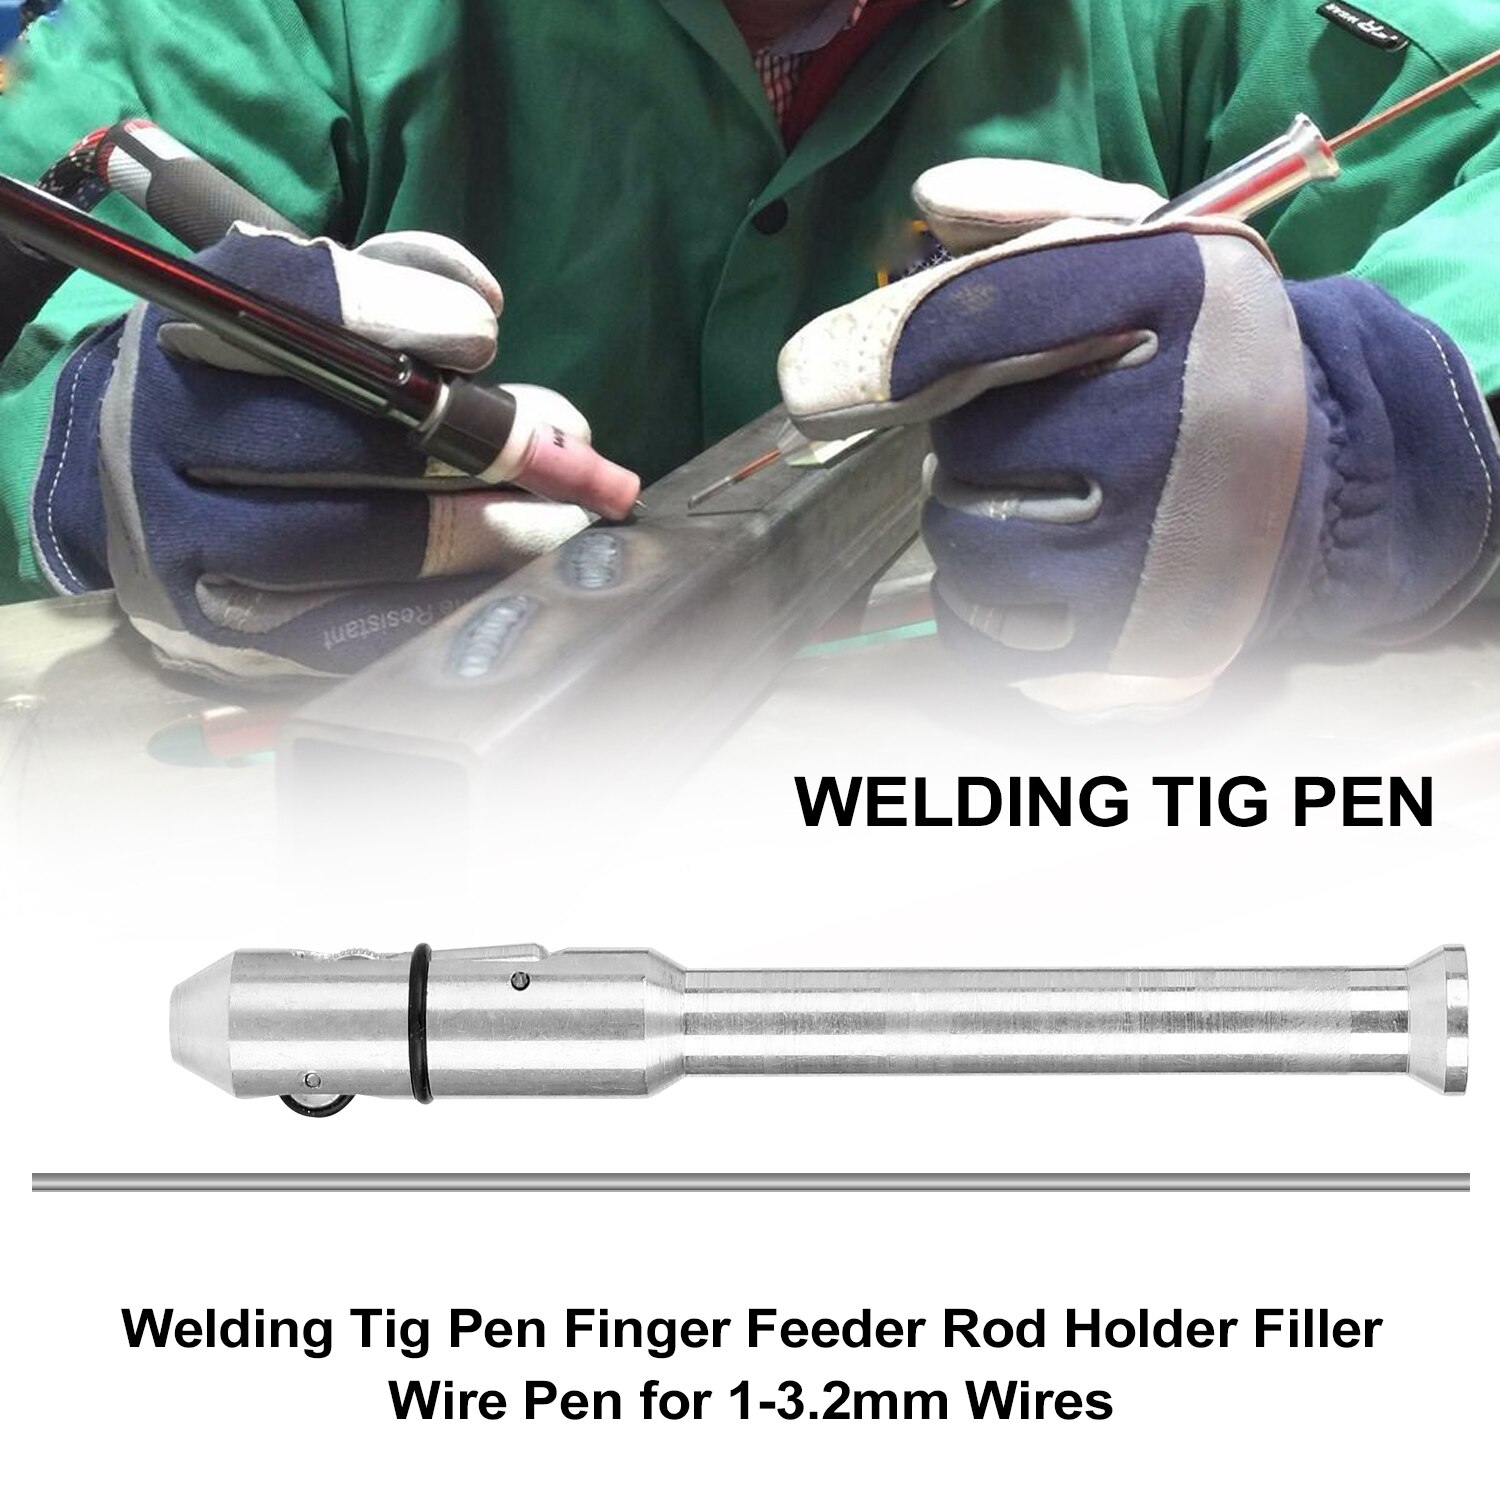 Svejsning tig pen finger feeder stang holder fyldetråd pen finger feeder ledninger svejsning stang holder fyldstof til 1-3.2mm svejsetråd